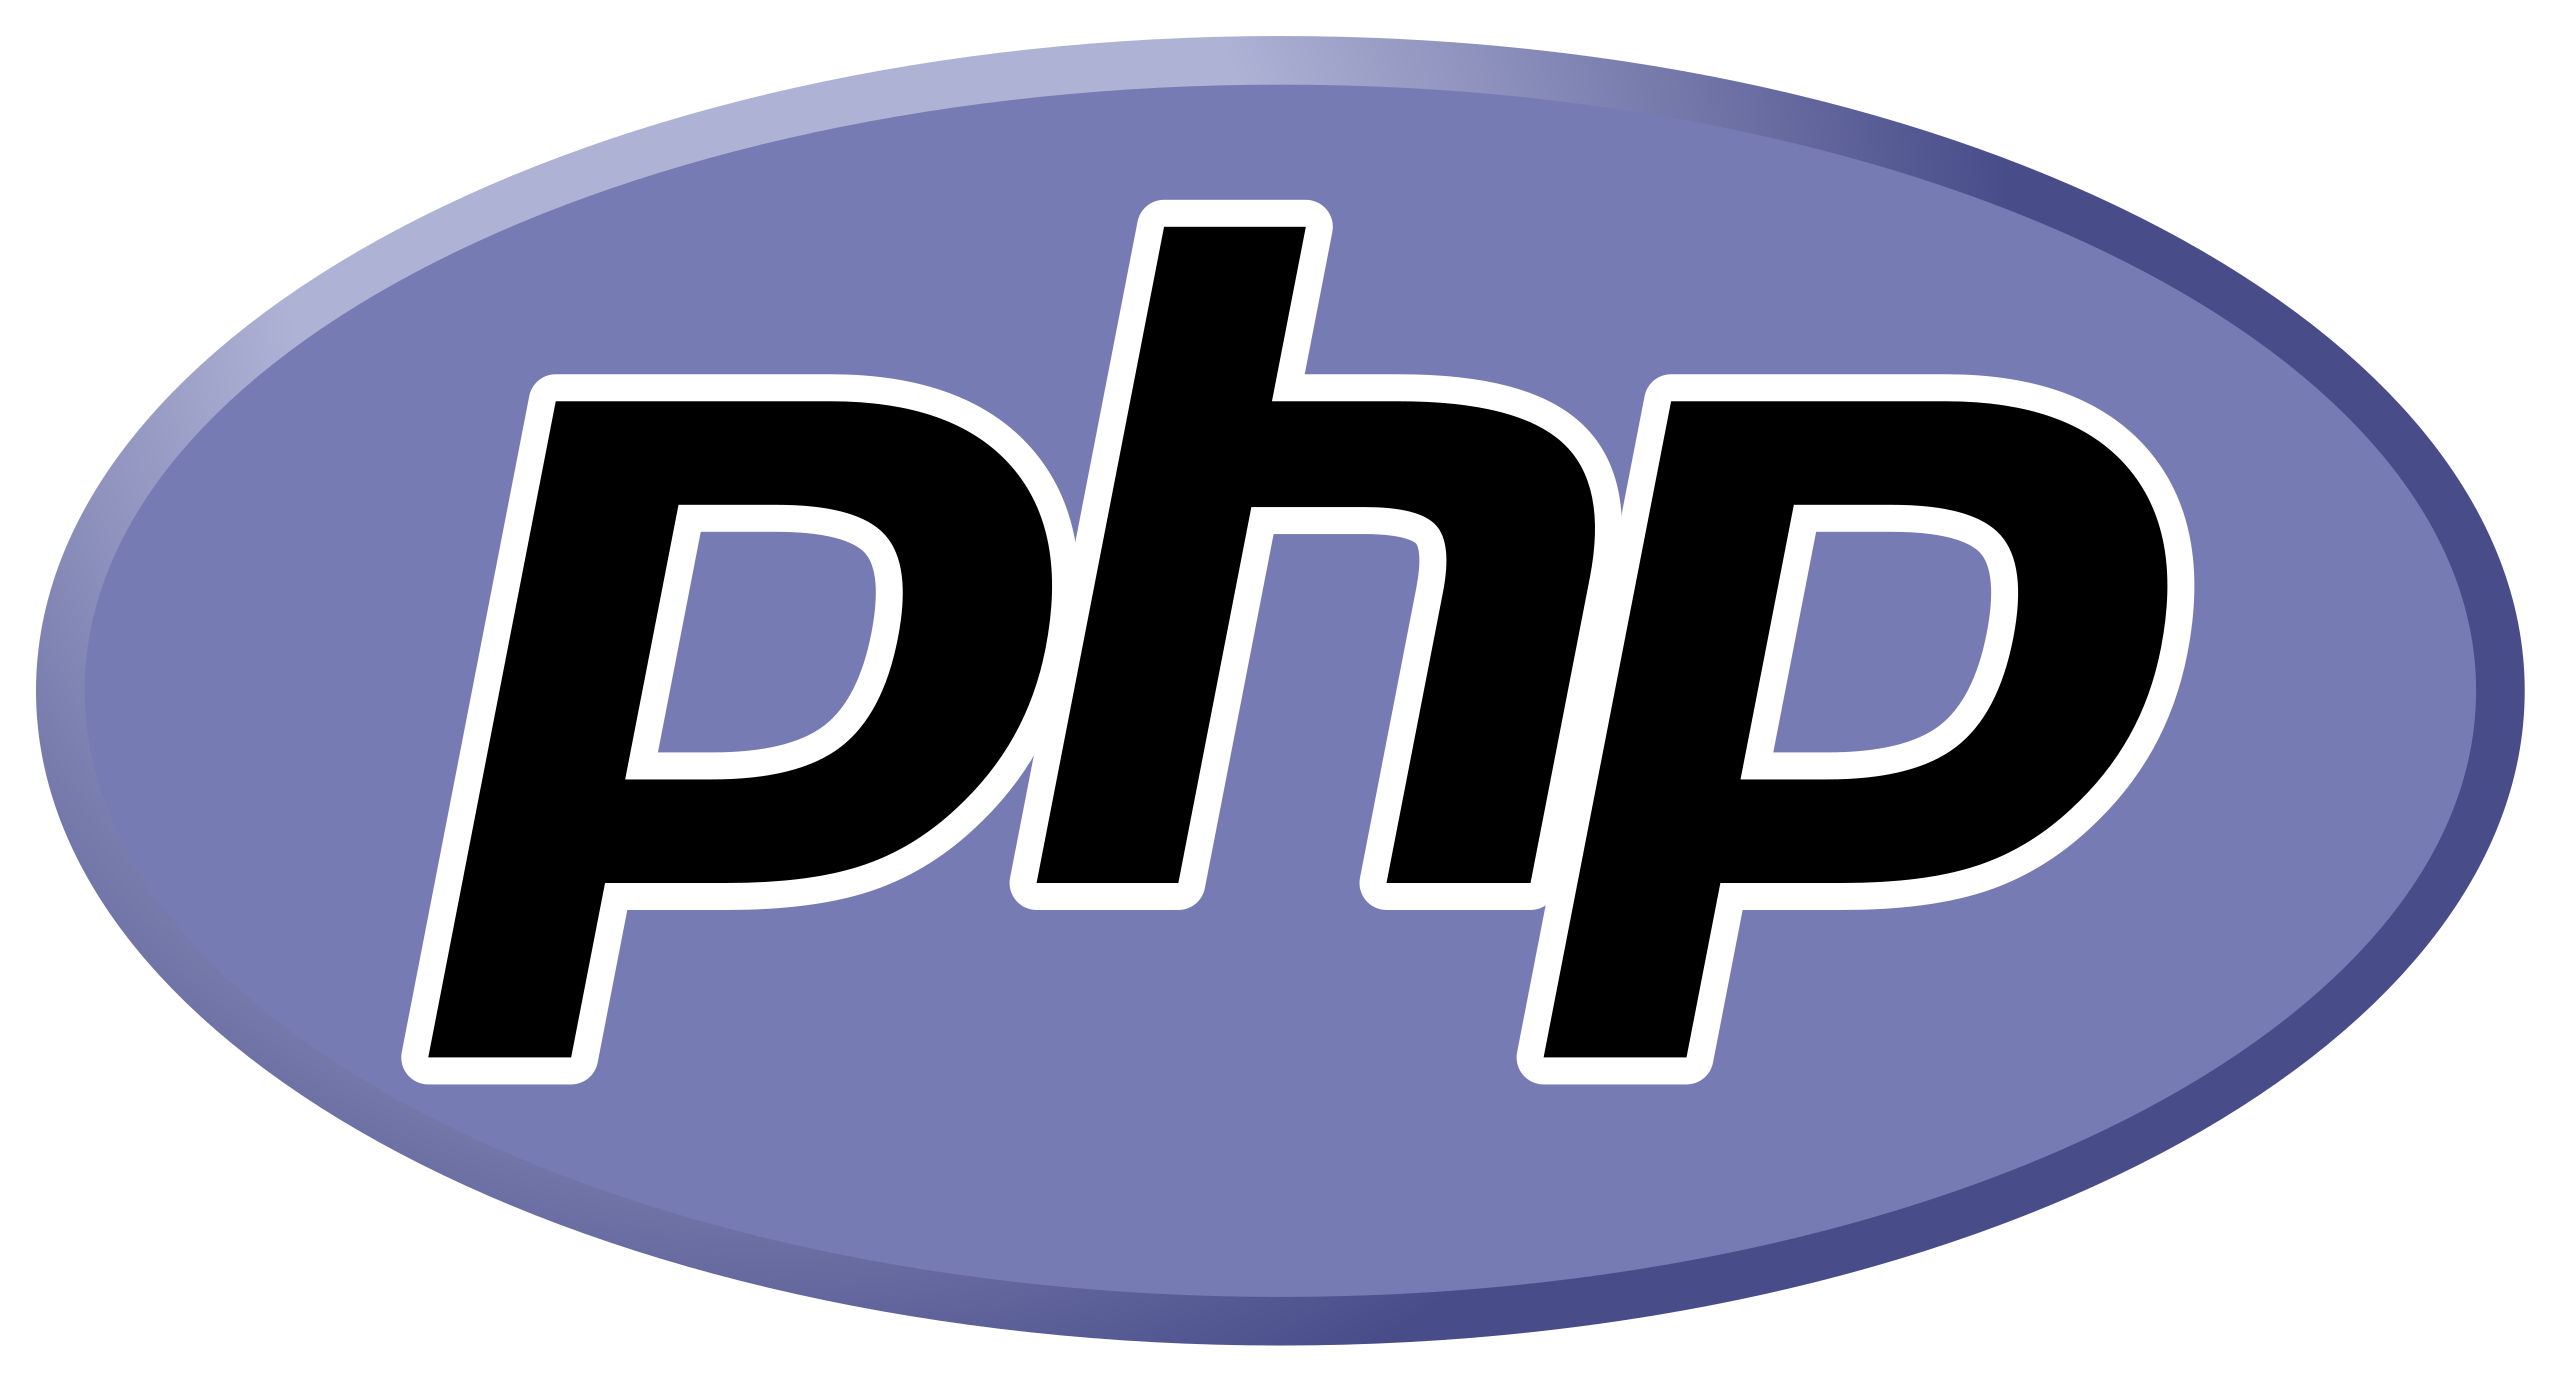 Du betrachtest gerade Willkommen zu unserem “Hello World” PHP-Tutorial!